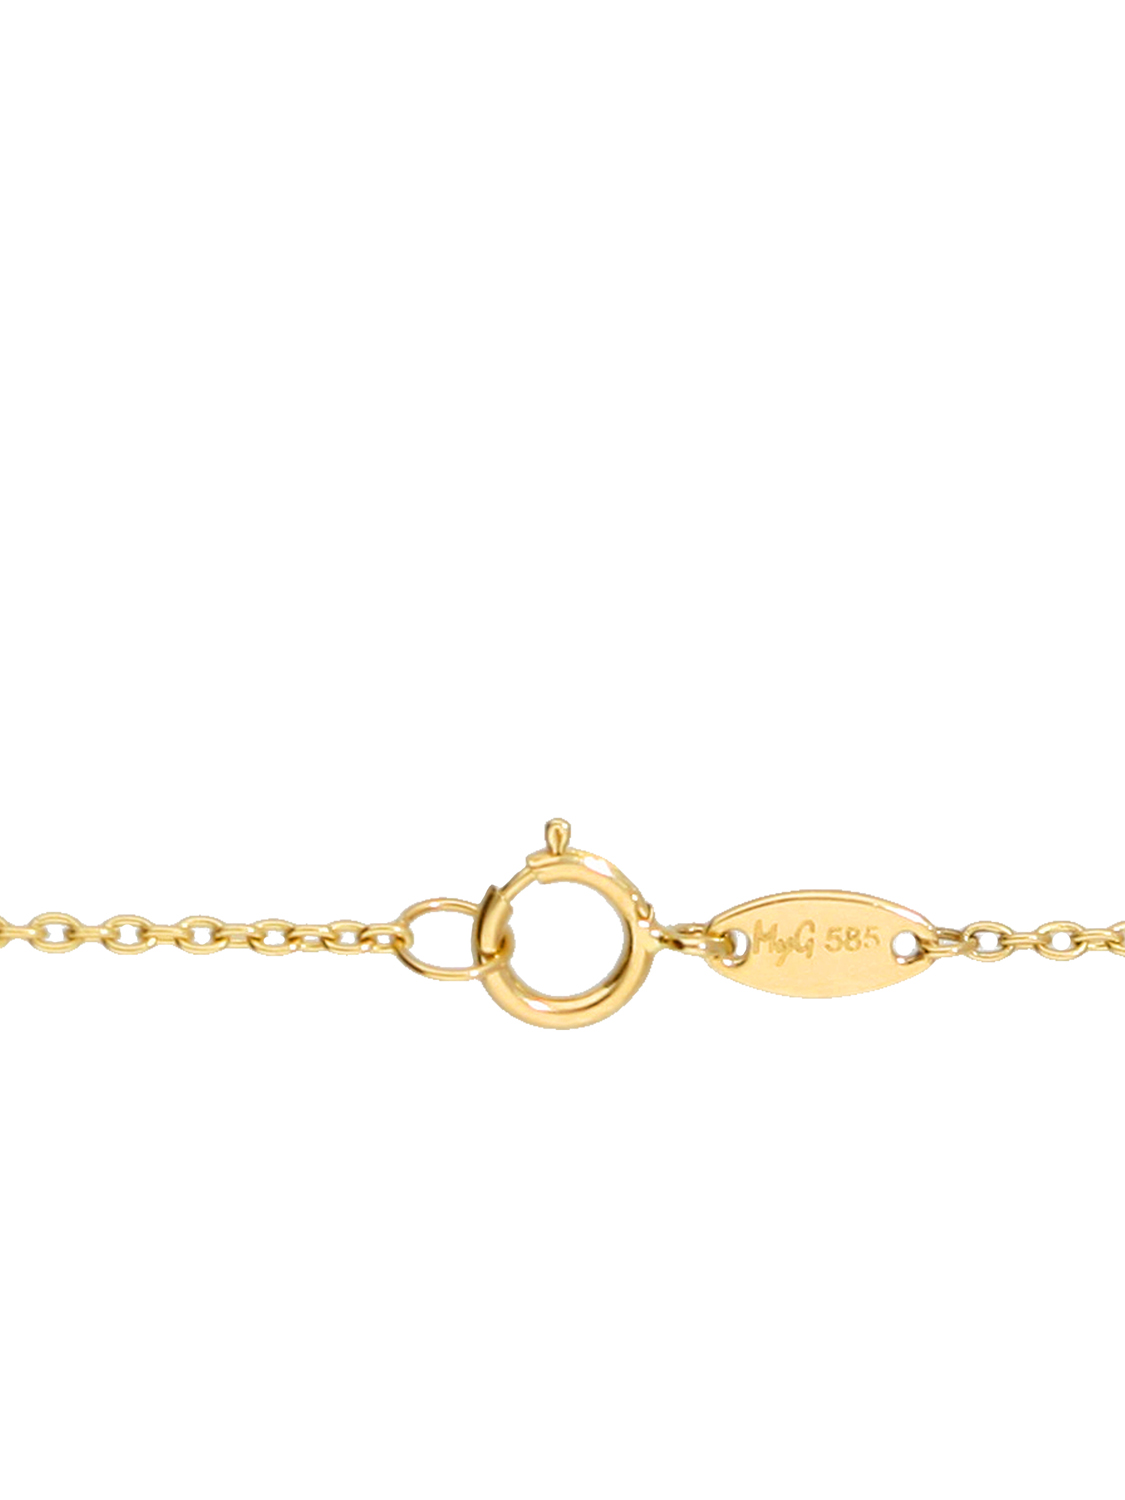 Daisy -  Damen Halskette mit Amethyst & Perle 585 Gold